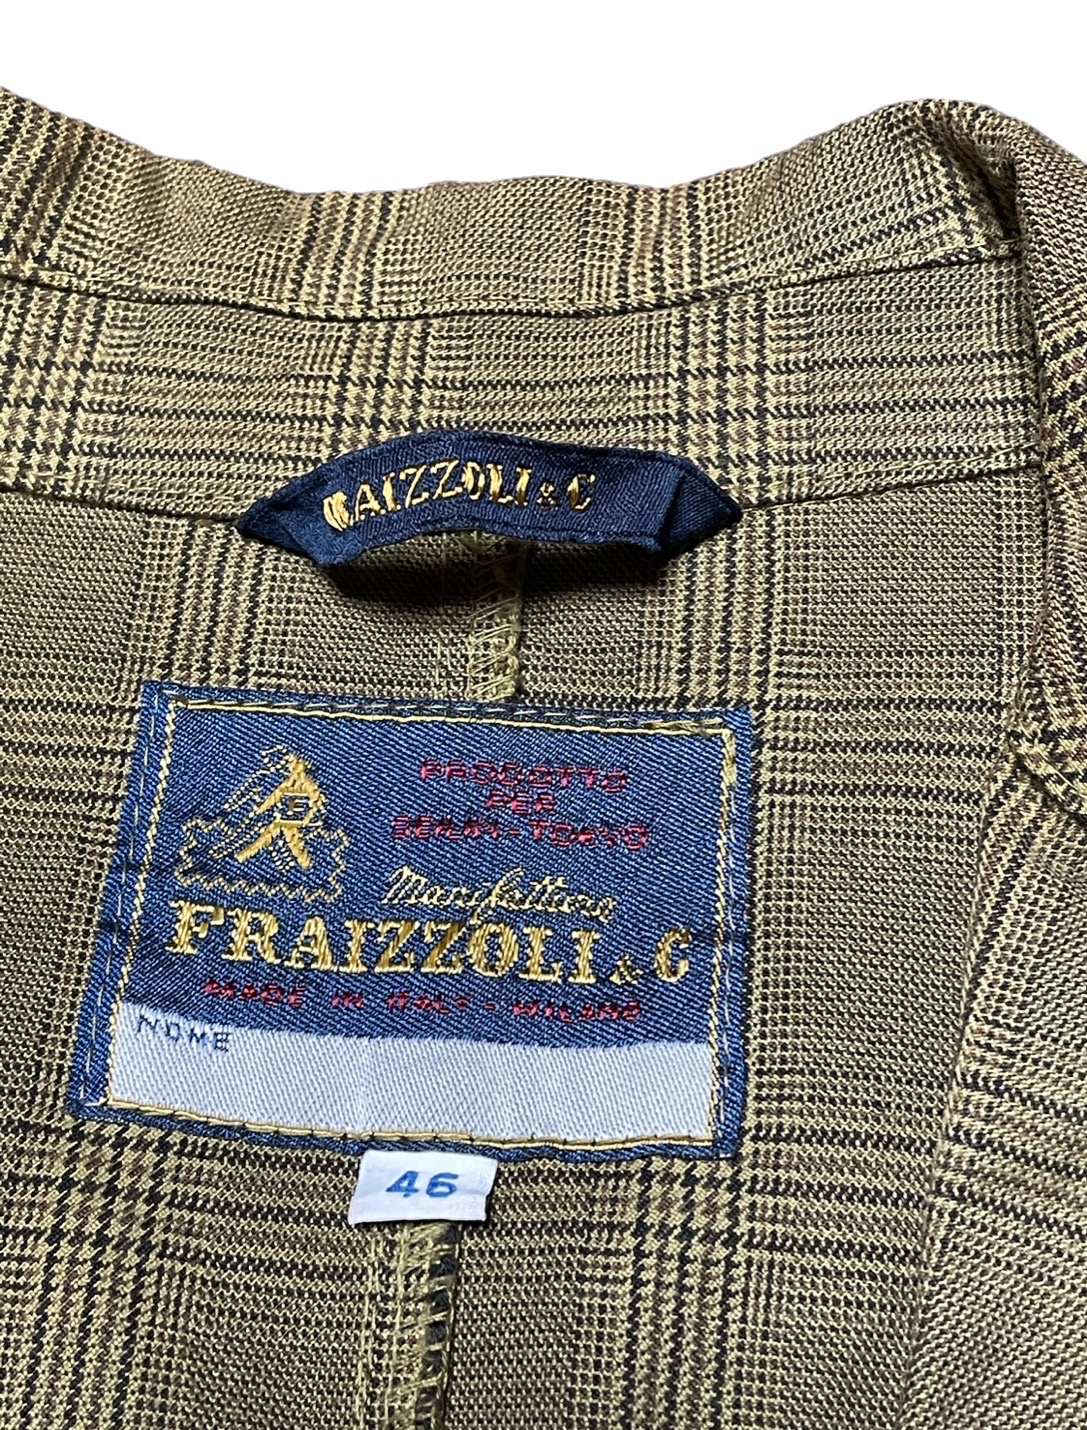 イタリア製 FRAIZZOLI チェック柄トラベルジャケット オリーブ46サイズ 